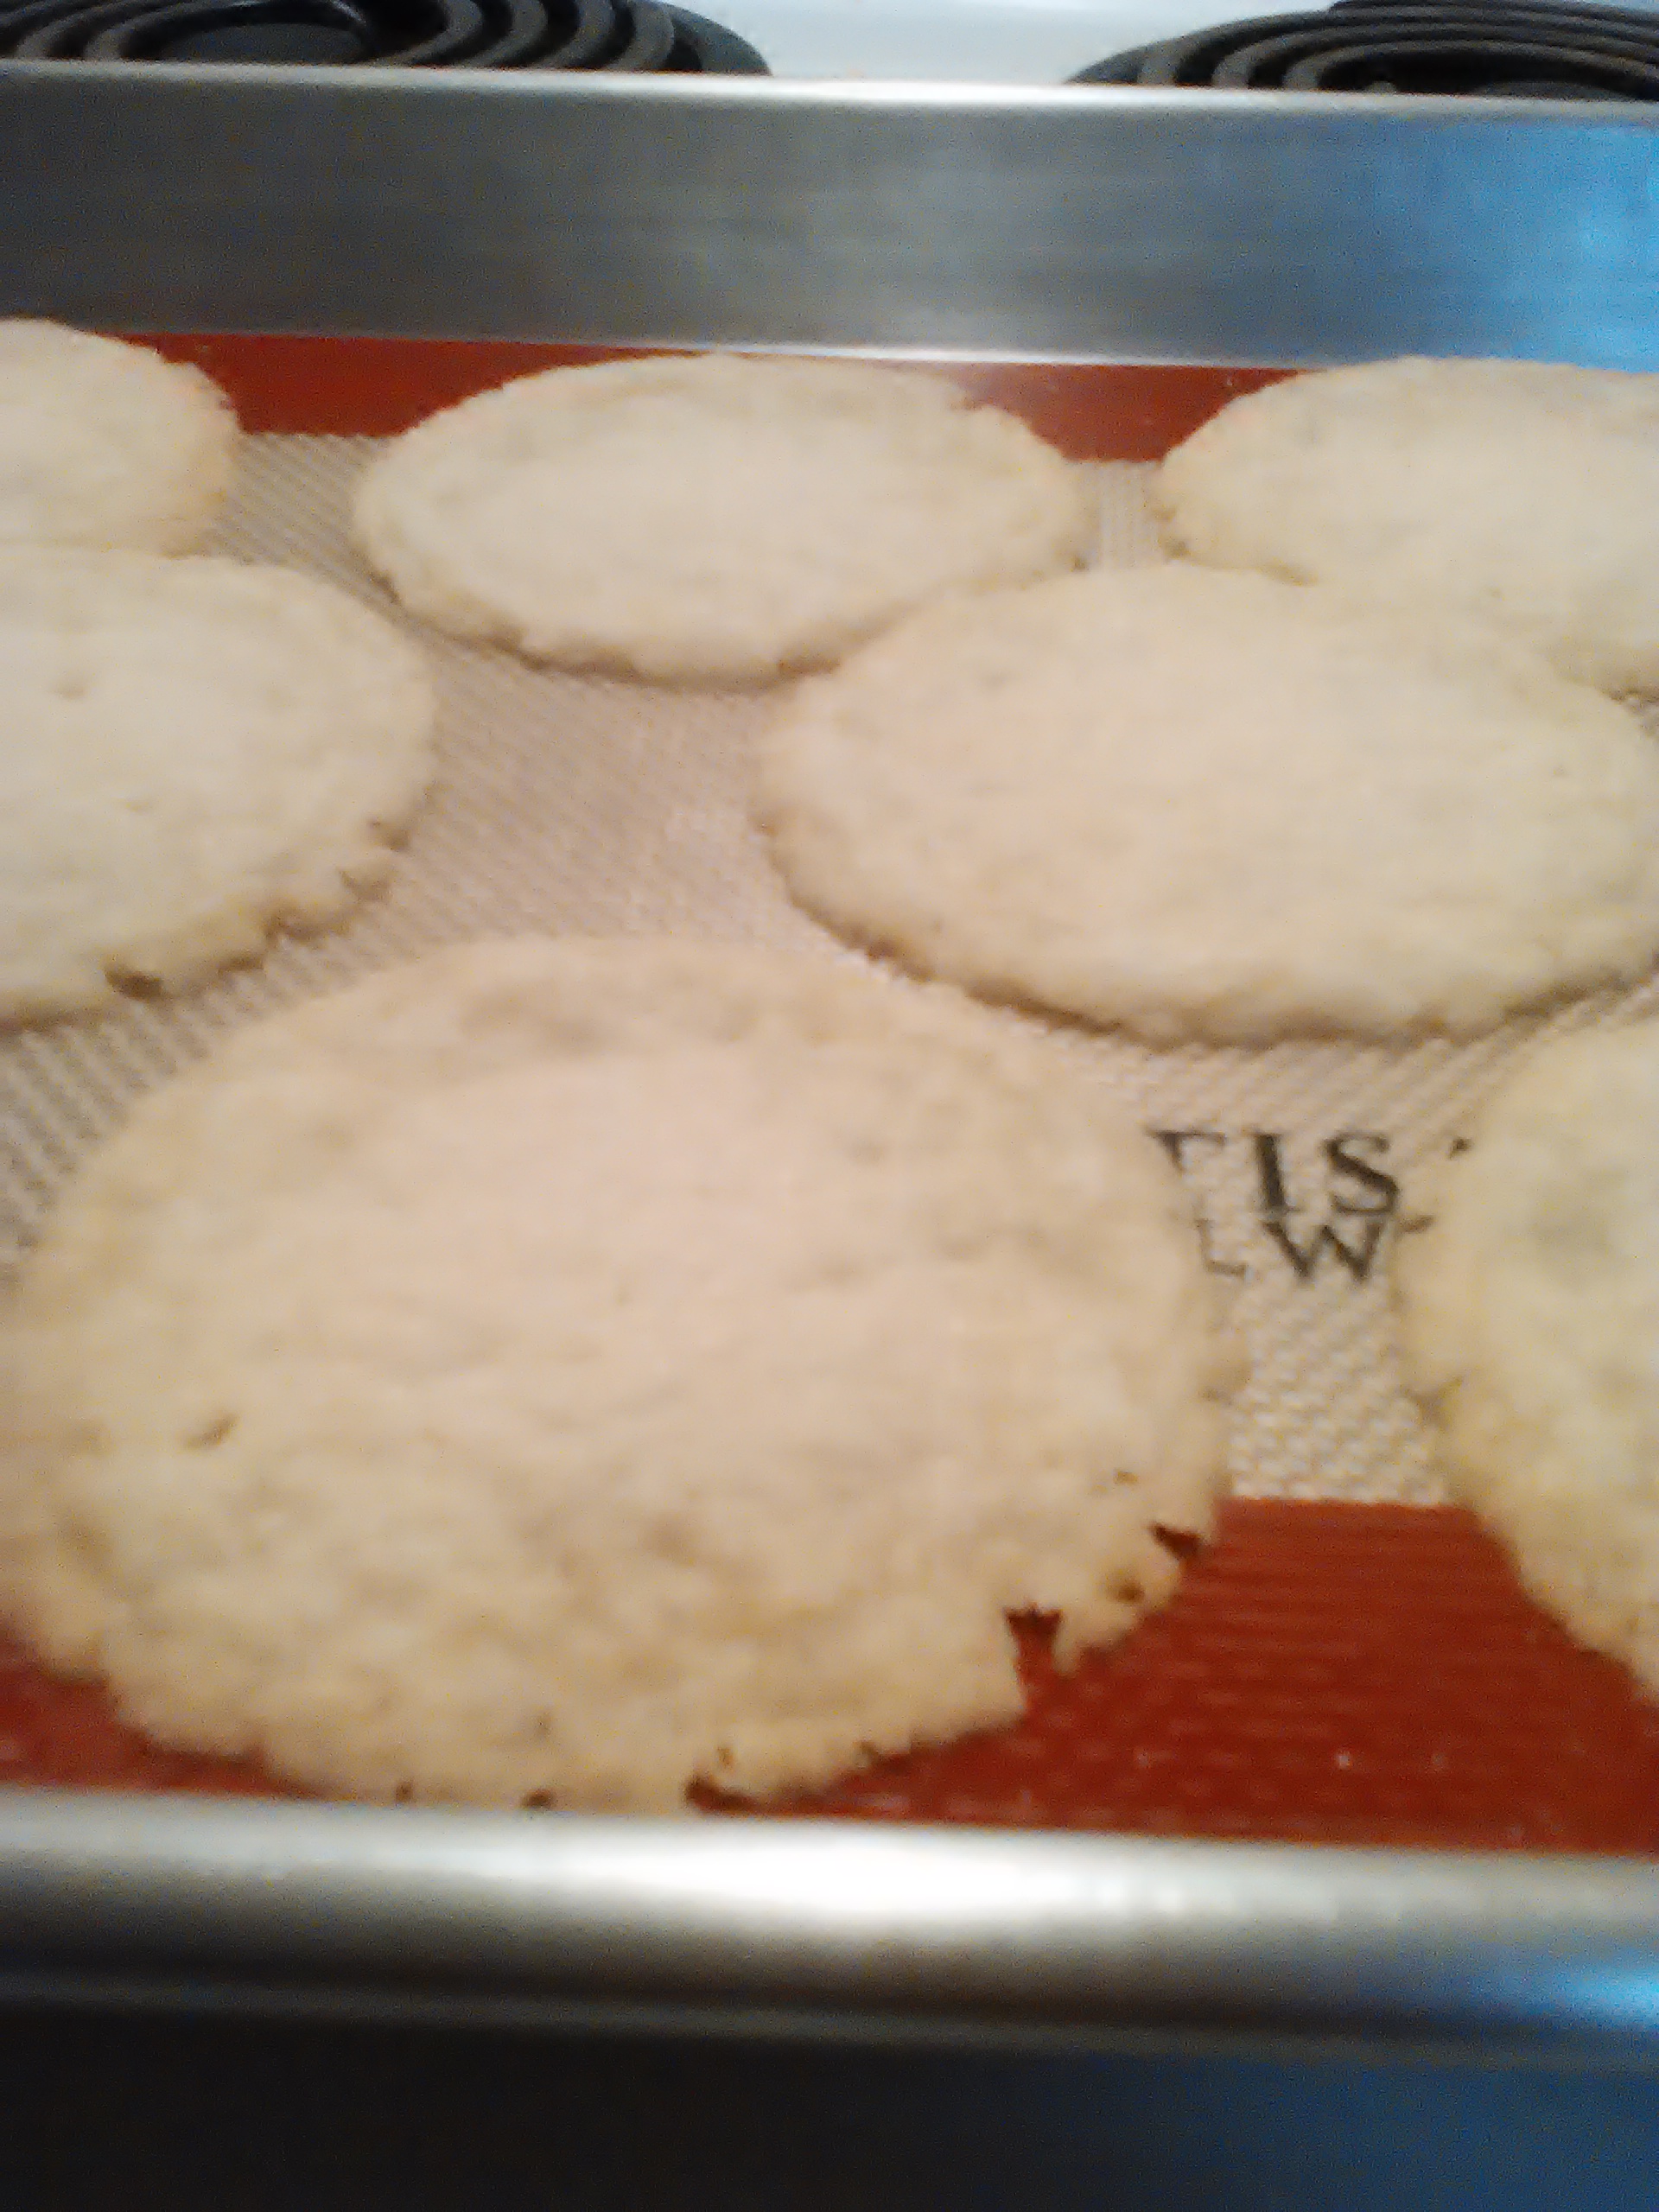 Holland Butter Cookies